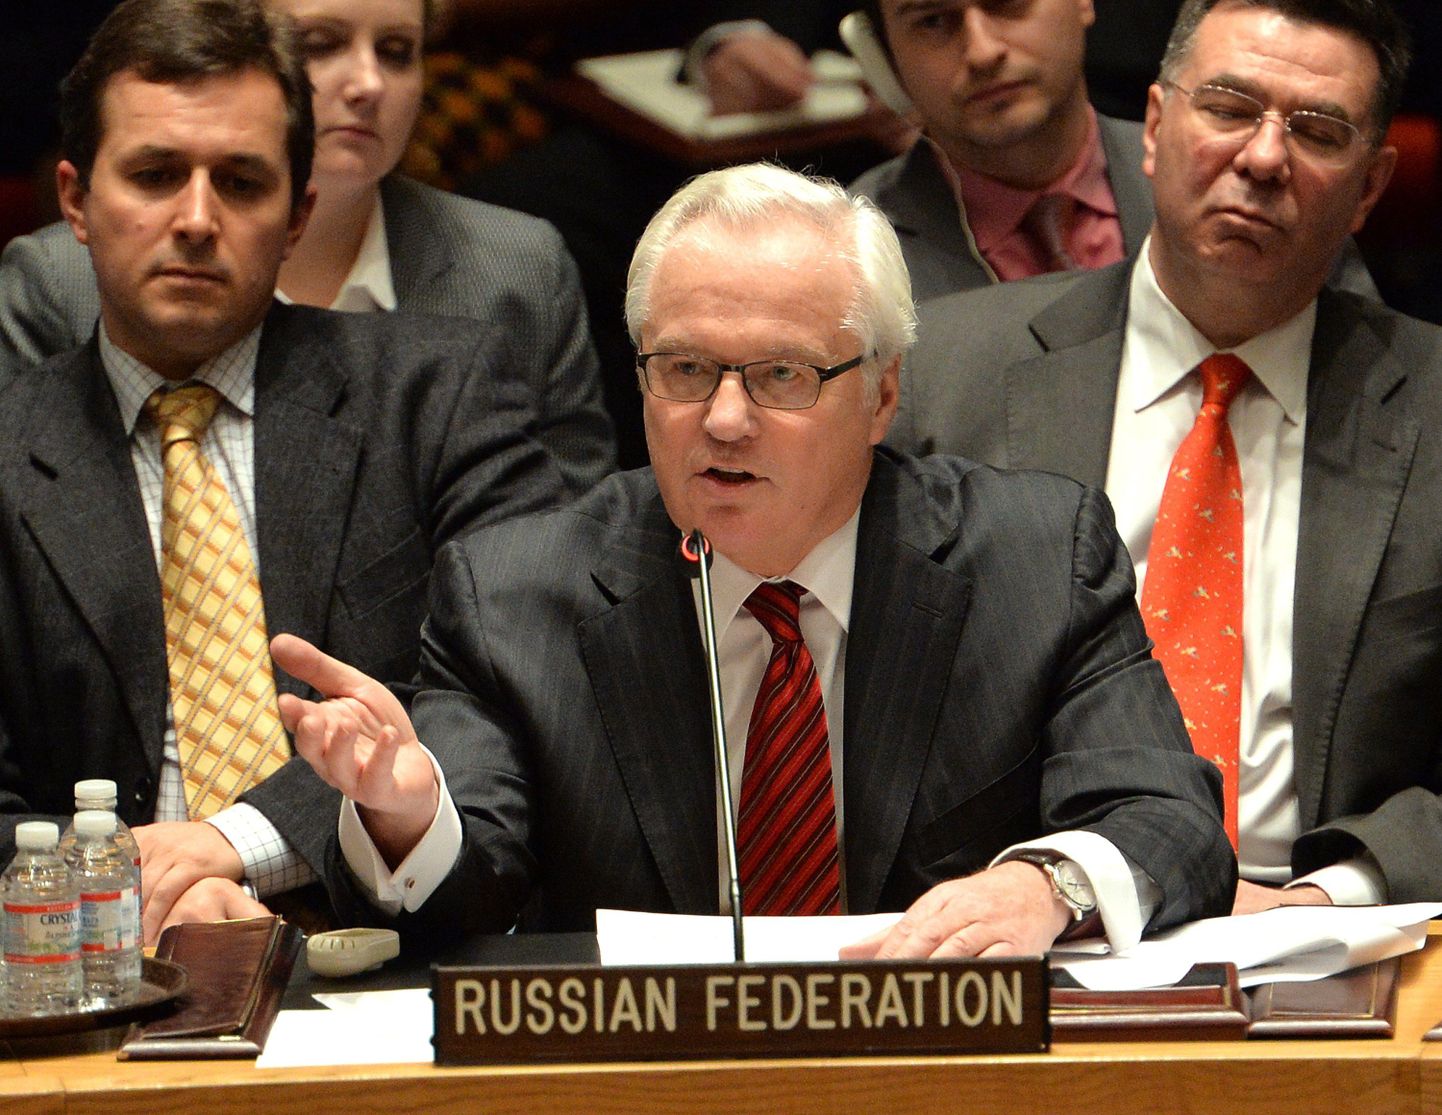 Постоянный представитель России при ООН Виталий Чуркин.